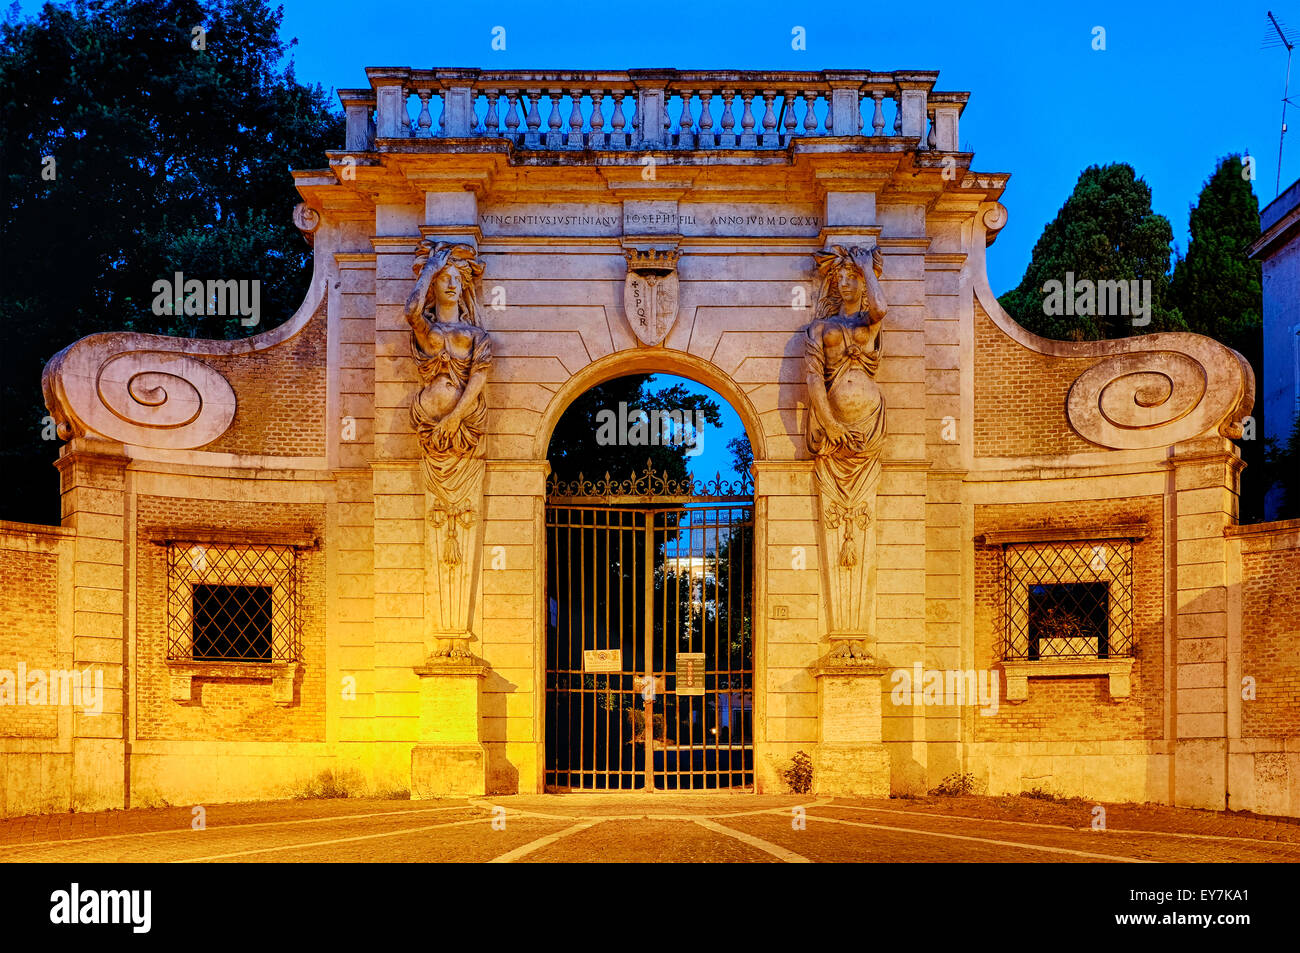 Entrée principale de la Villa Celimontana, Rome Italie Banque D'Images